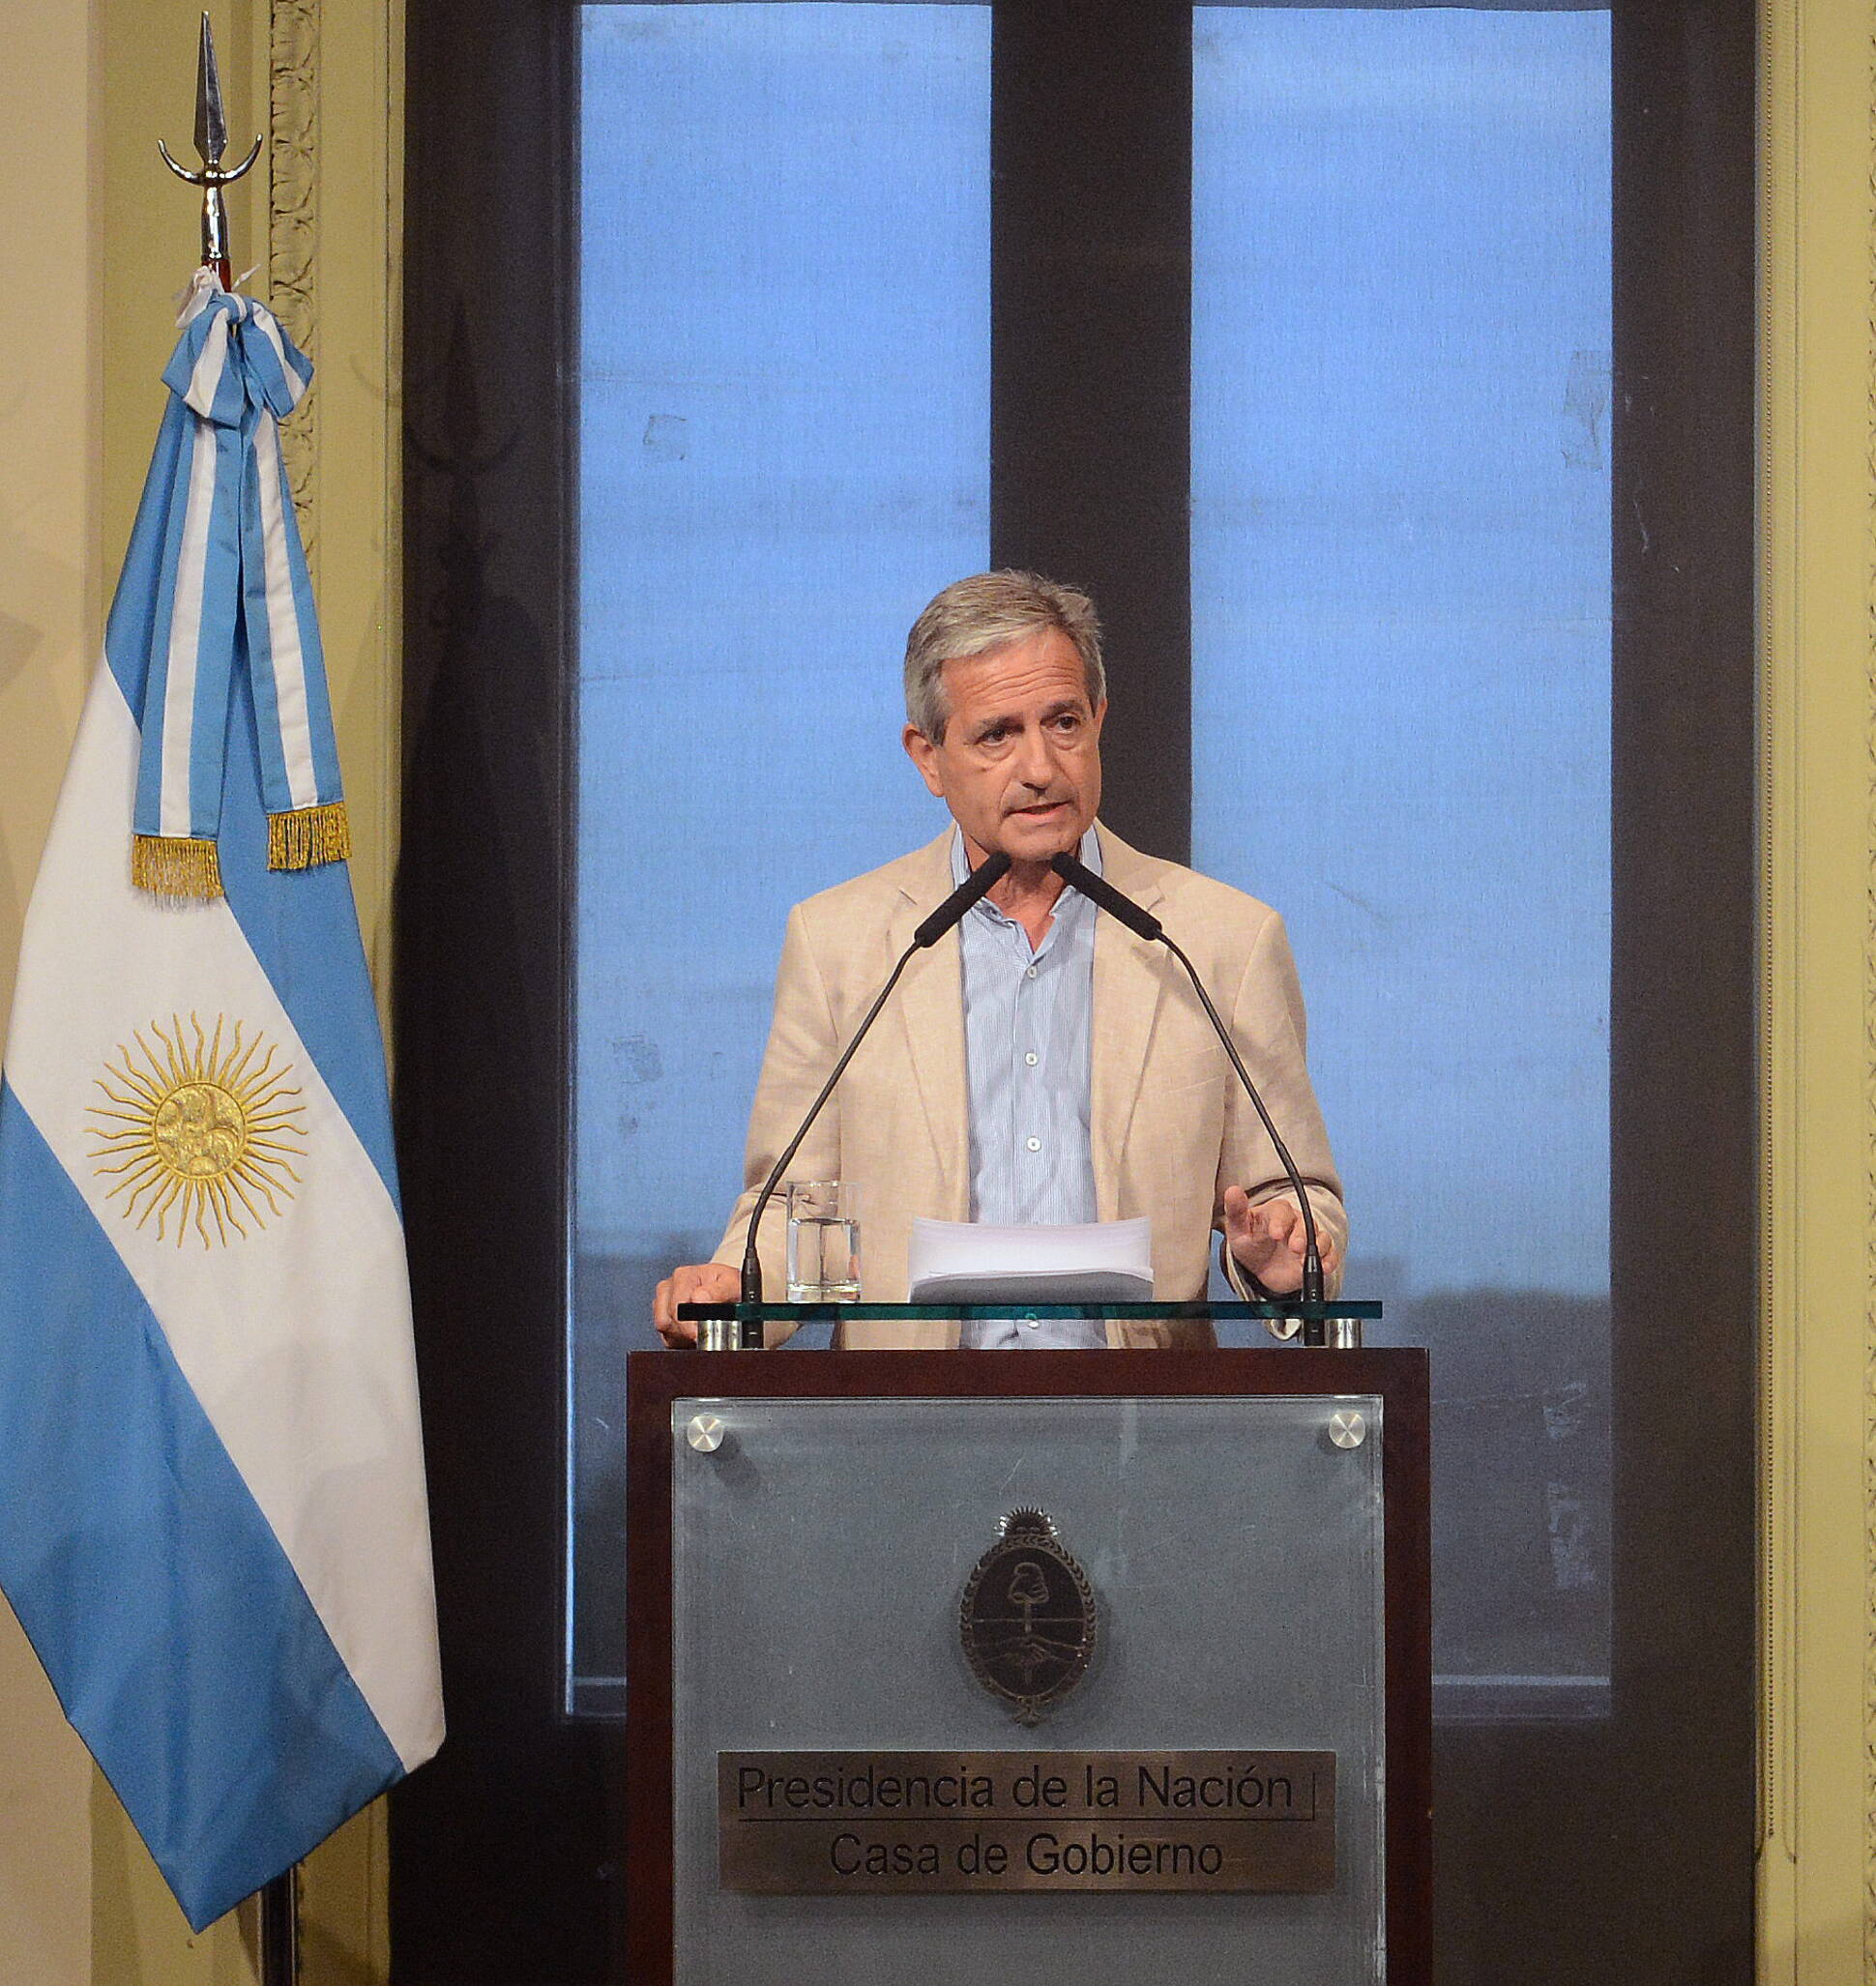 El ministro de Modernización, Andrés Ibarra, anunció que promoverá el sistema de Gobierno Abierto.